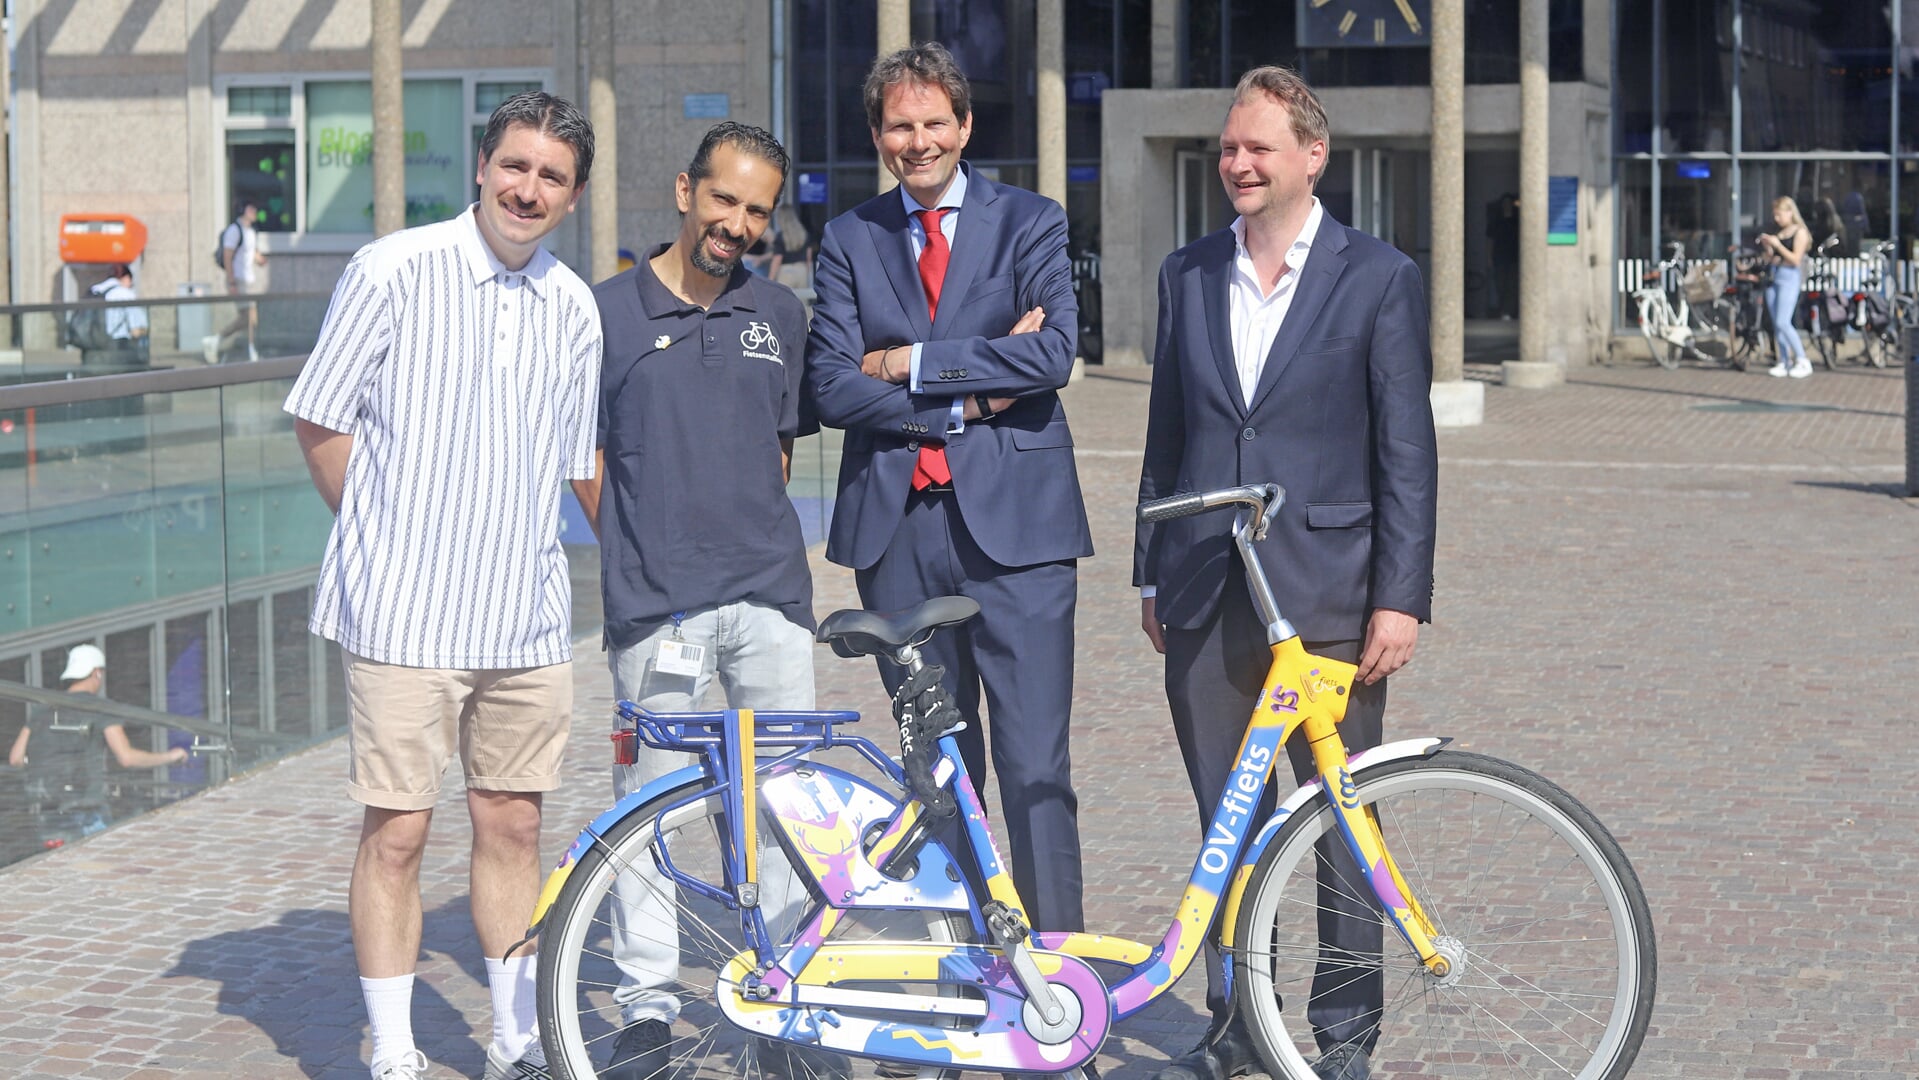 Daniël Roozenboom (kunstenaar), Amine El Kanouni (fietsenstalling), Maarten Haverkamp (NS) en Sjoerd Wannet (wethouder) poseren vóór het station met de feestfiets. Foto: Sander Grootendorst